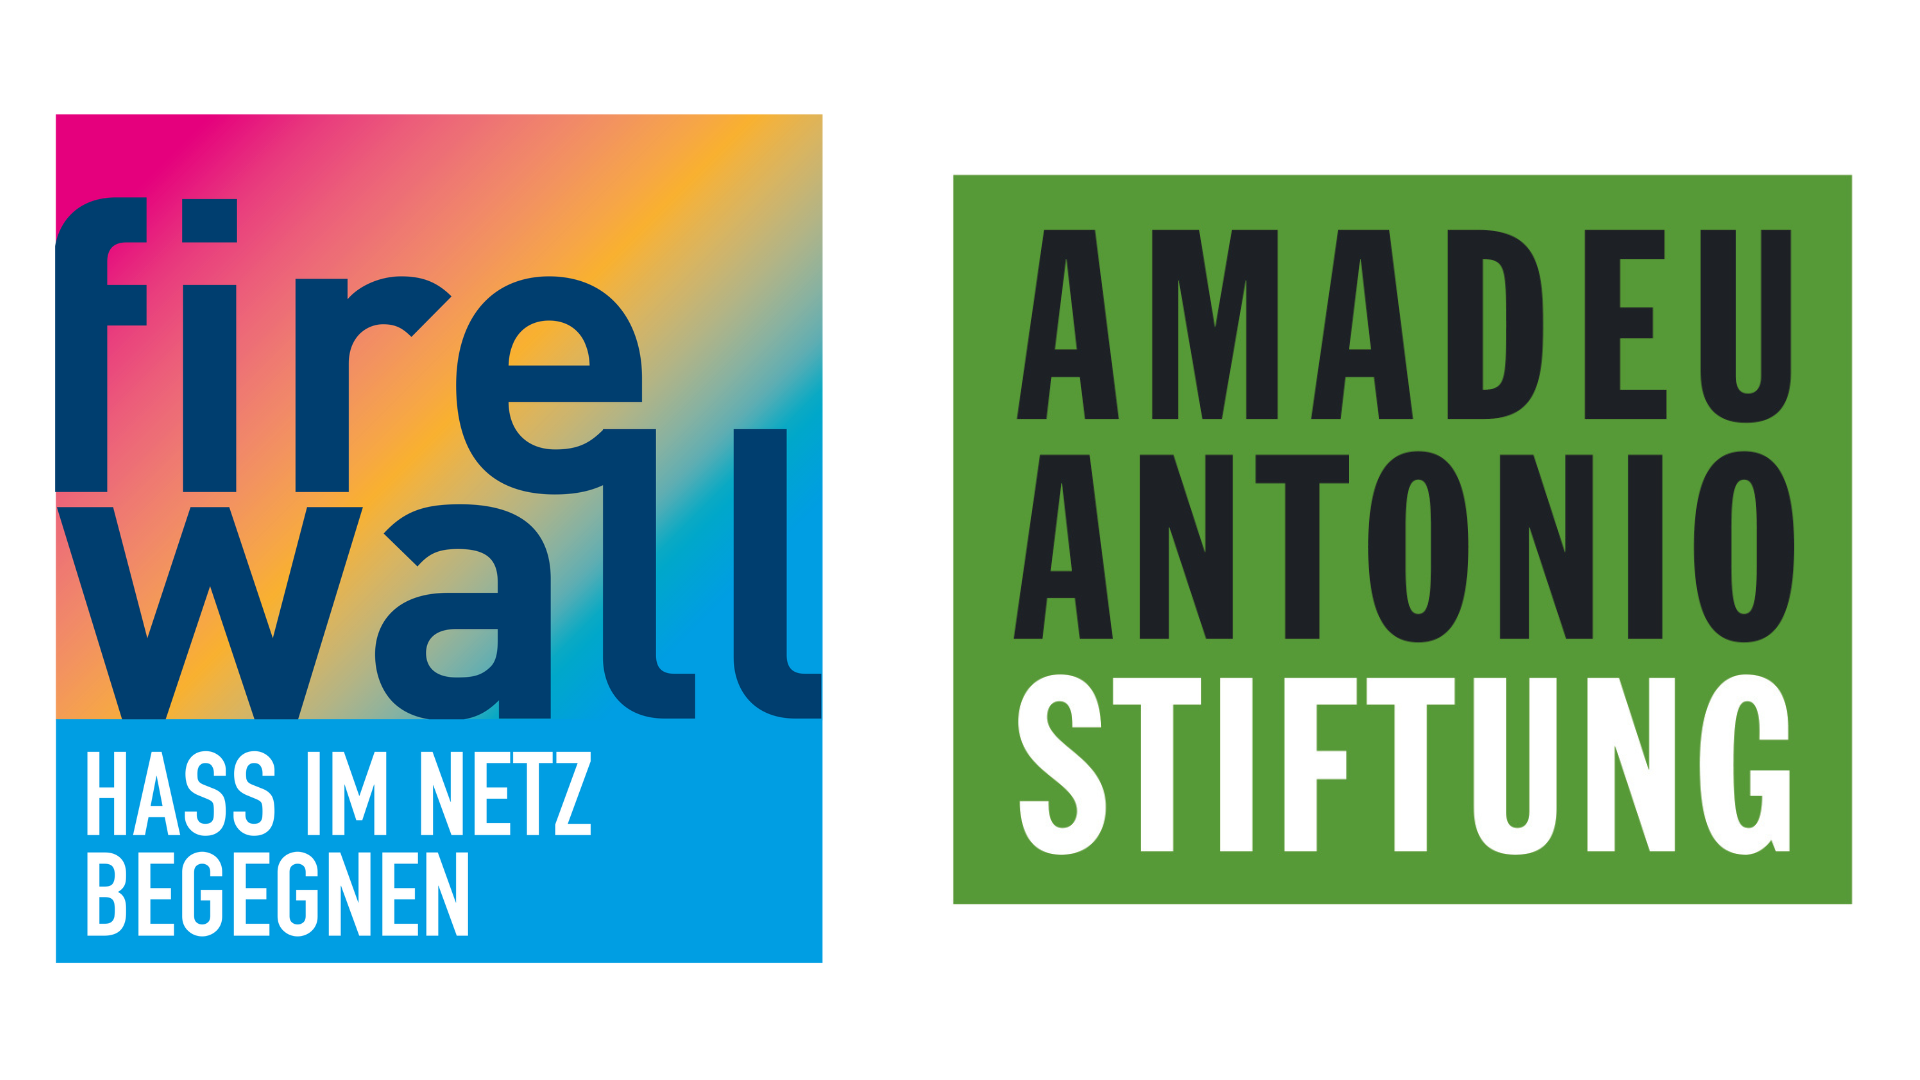 Logos des Projekts firewall und der Amadeu Antonio Stiftung